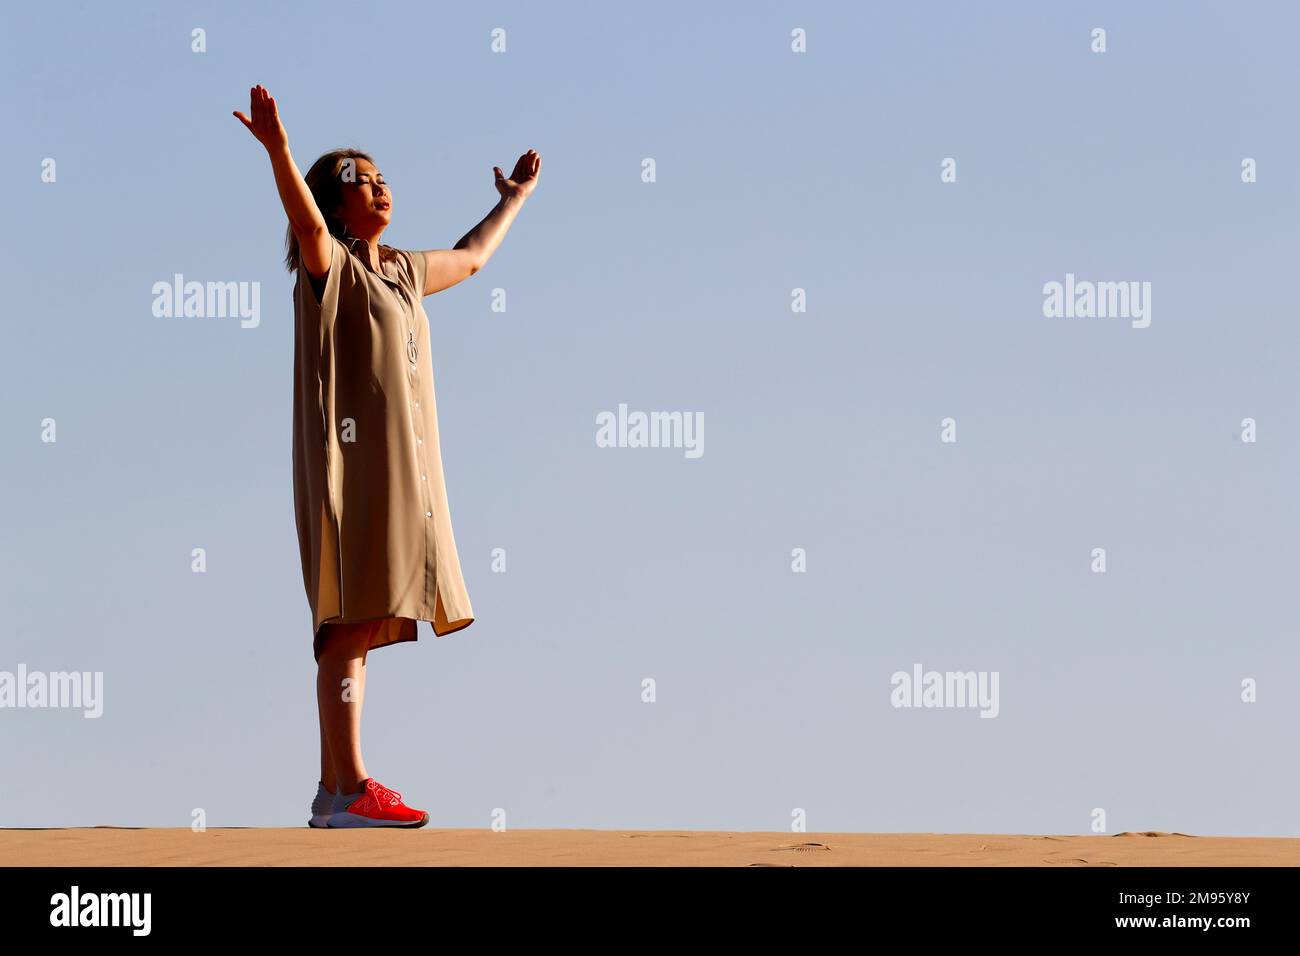 Eine Frau mit ausgestreckten Armen, die auf Sanddünen in der Wüste spaziert. Konzept für Religion, Glauben, Gebet und Spiritualität. Abu Dhabi. Vereinigte Arabische Emirate Stockfoto